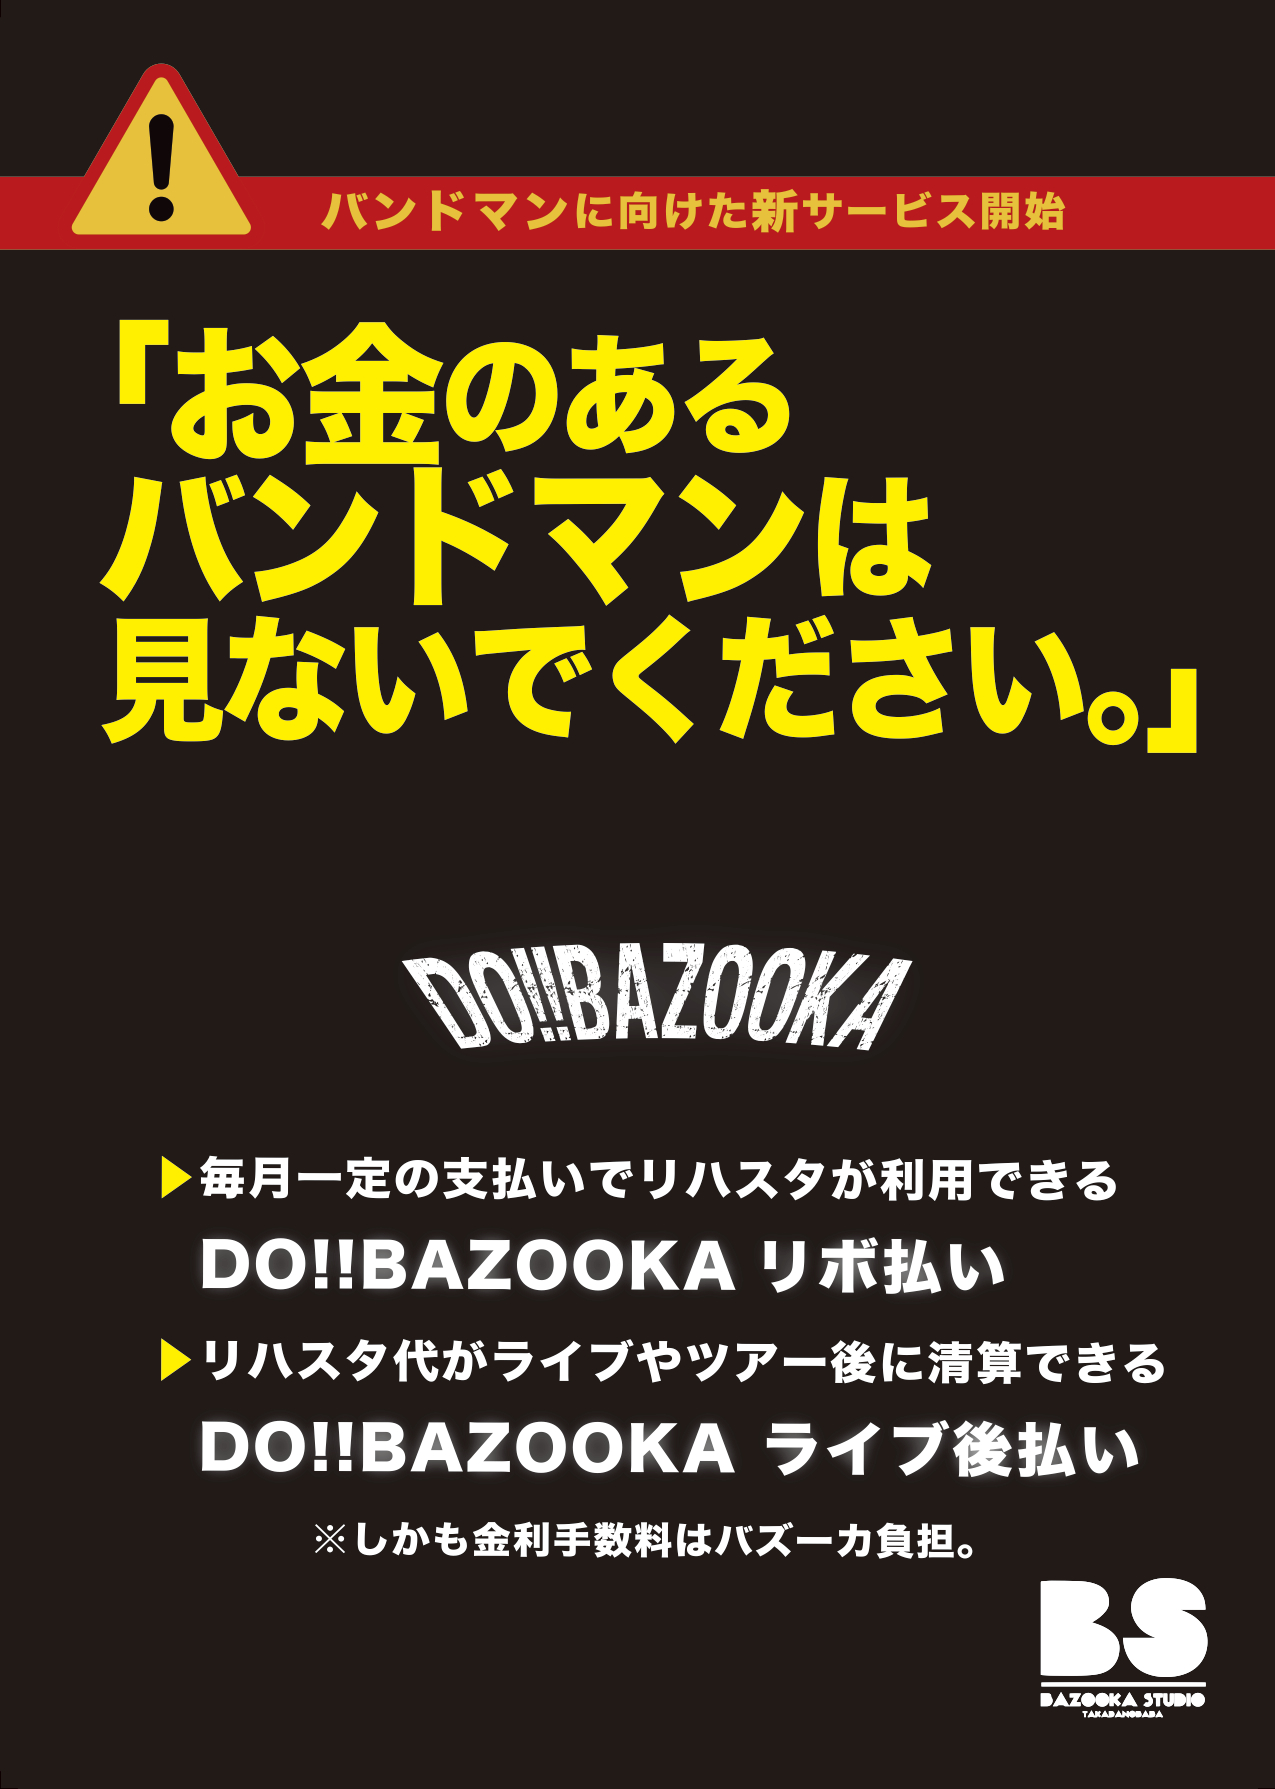 DO!bazooka縦